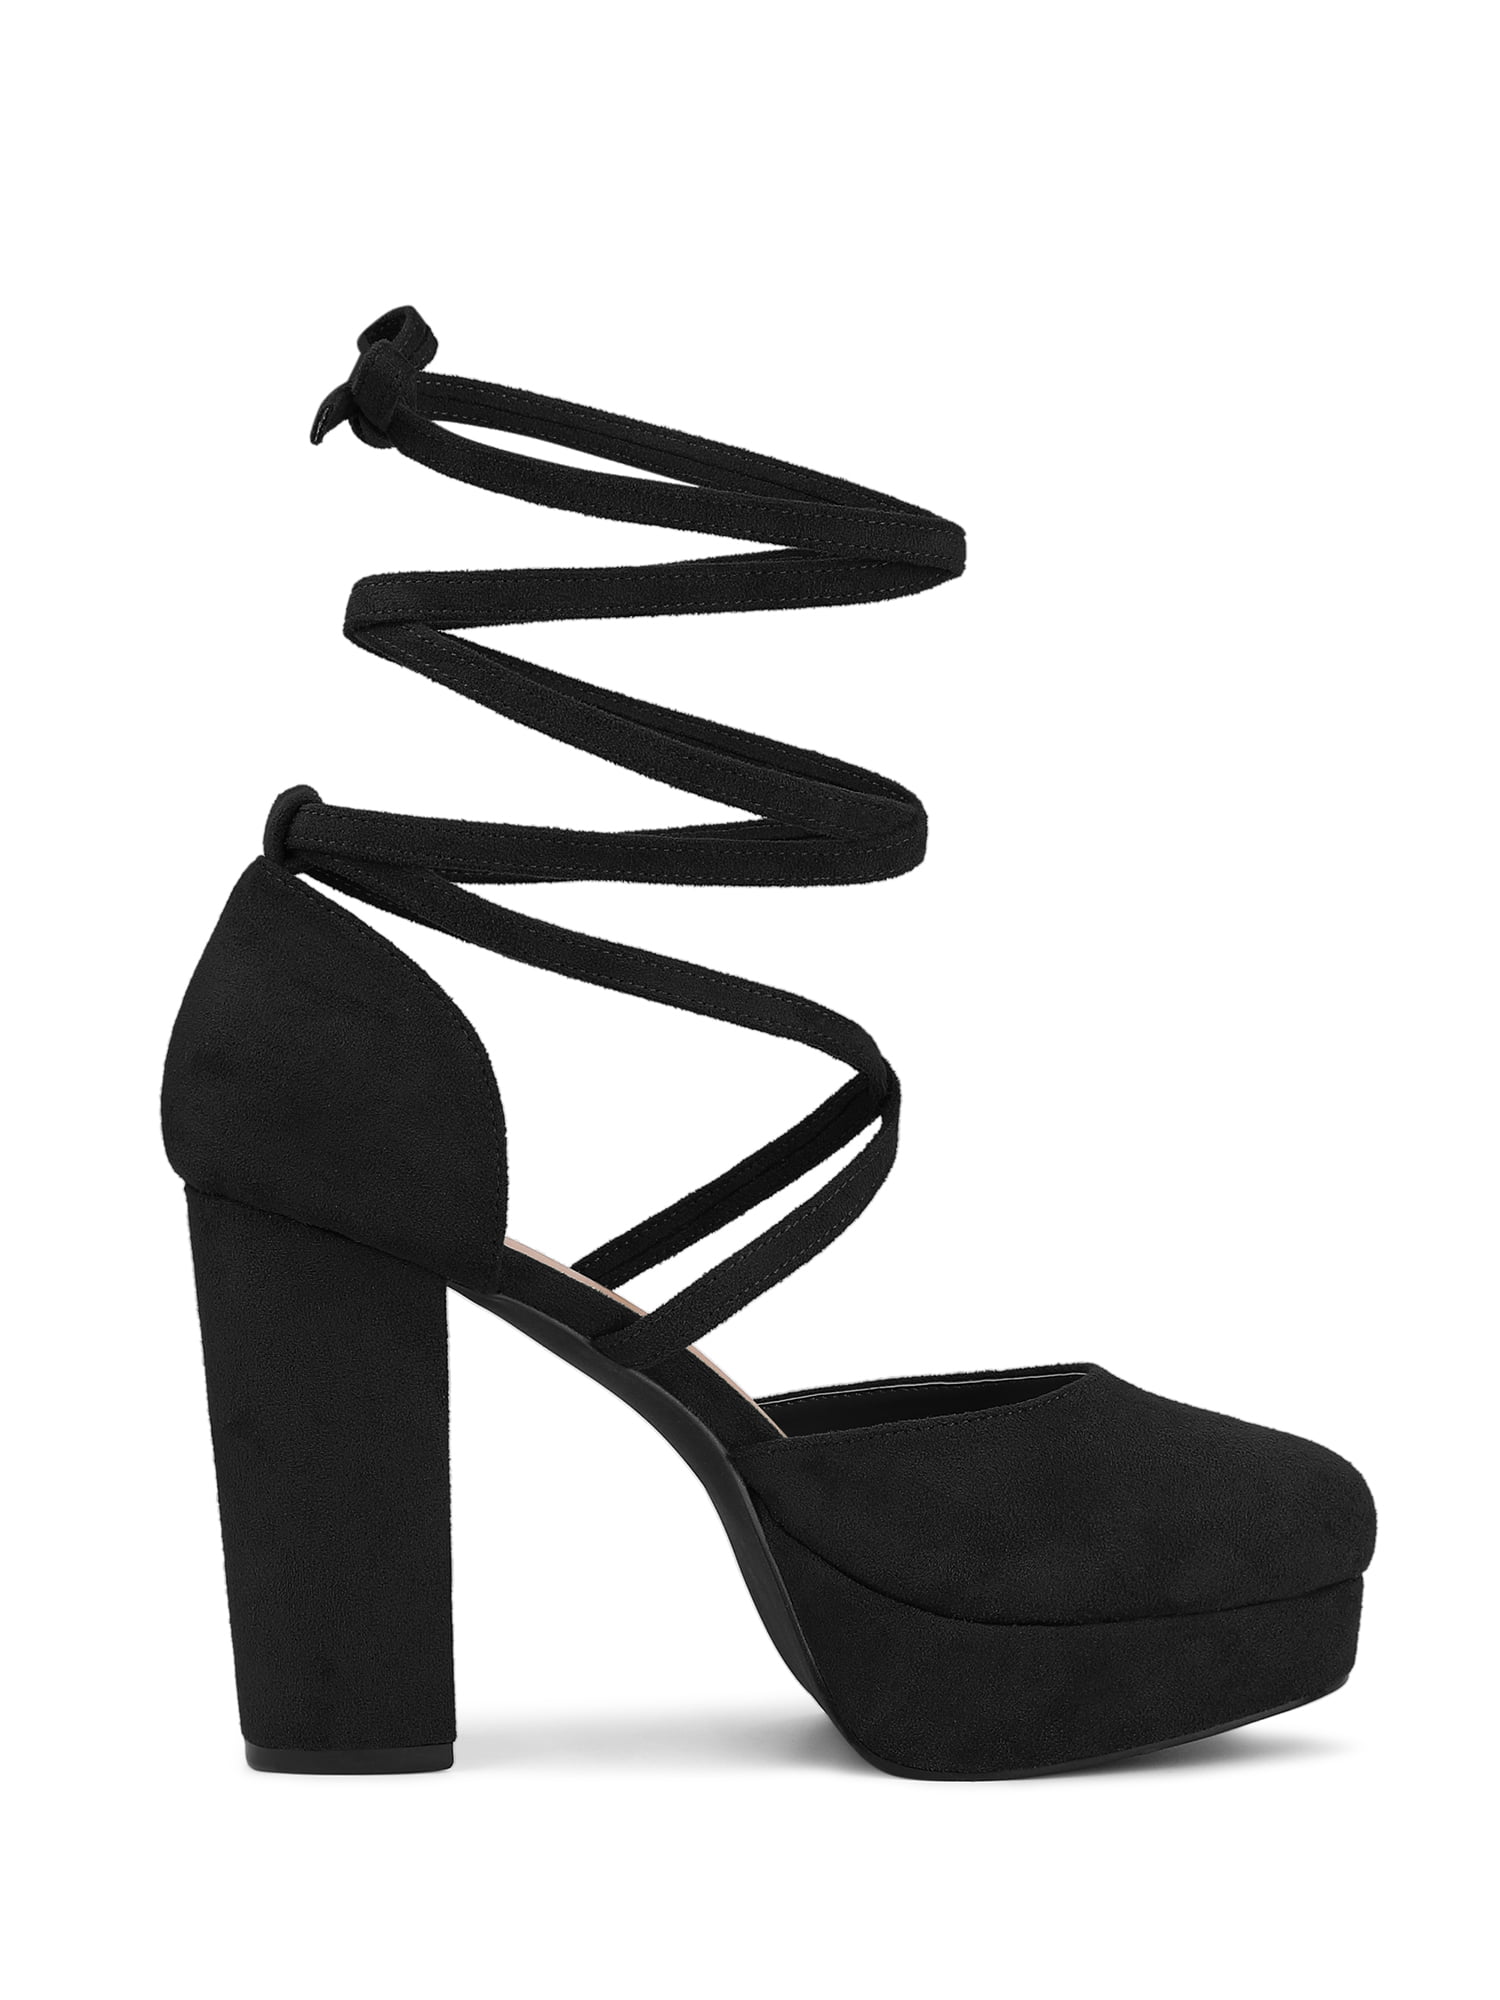 Black Peep Toe High Heels Fashion Sandals on Luulla